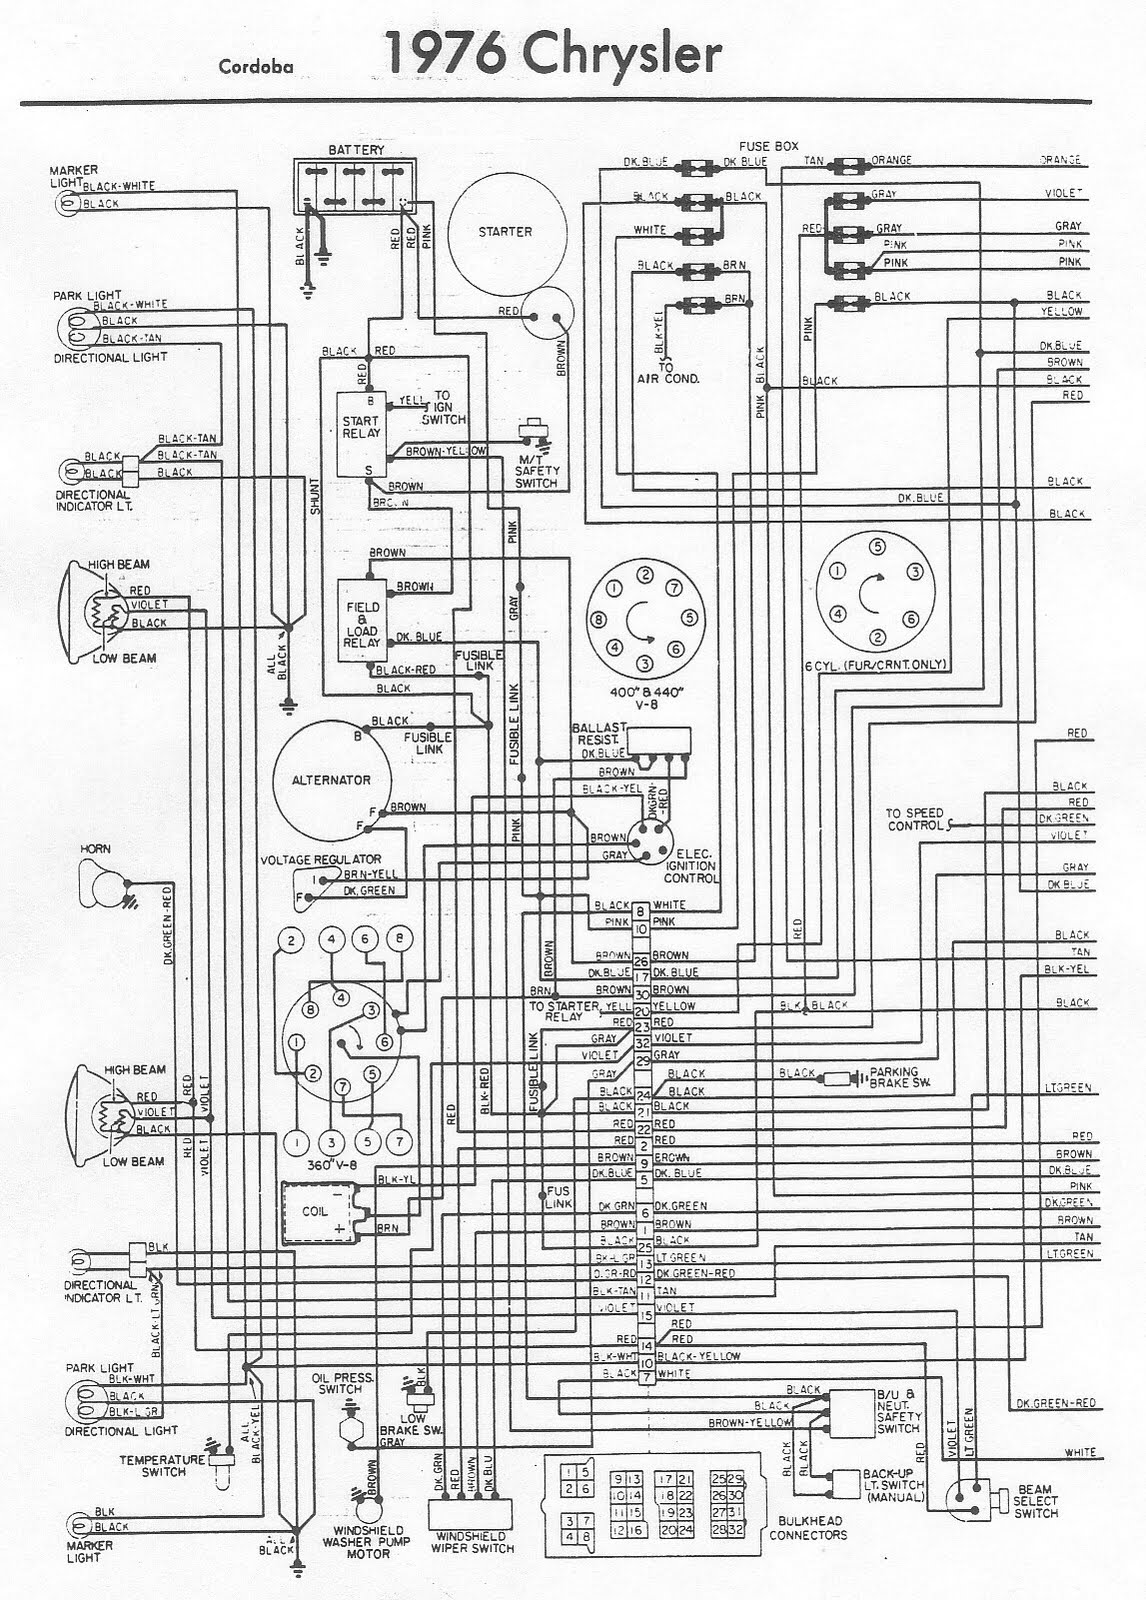 b-4300-209 wiring diagram